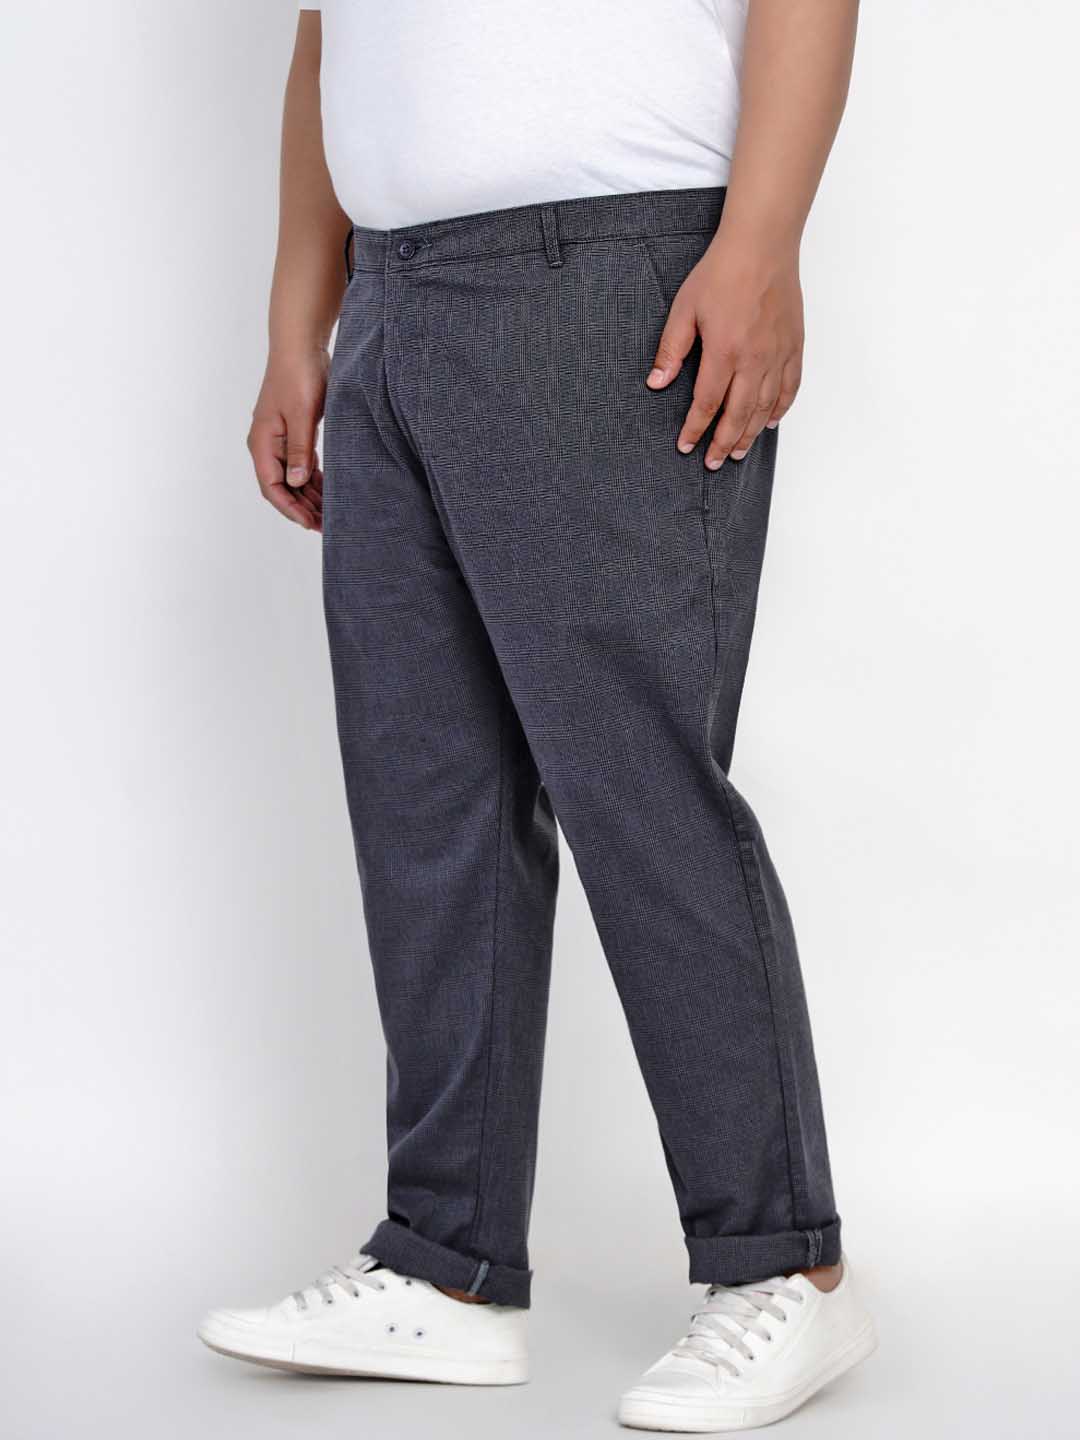 bottomwear/trousers/JPTR2148A/jptr2148a-3.jpg